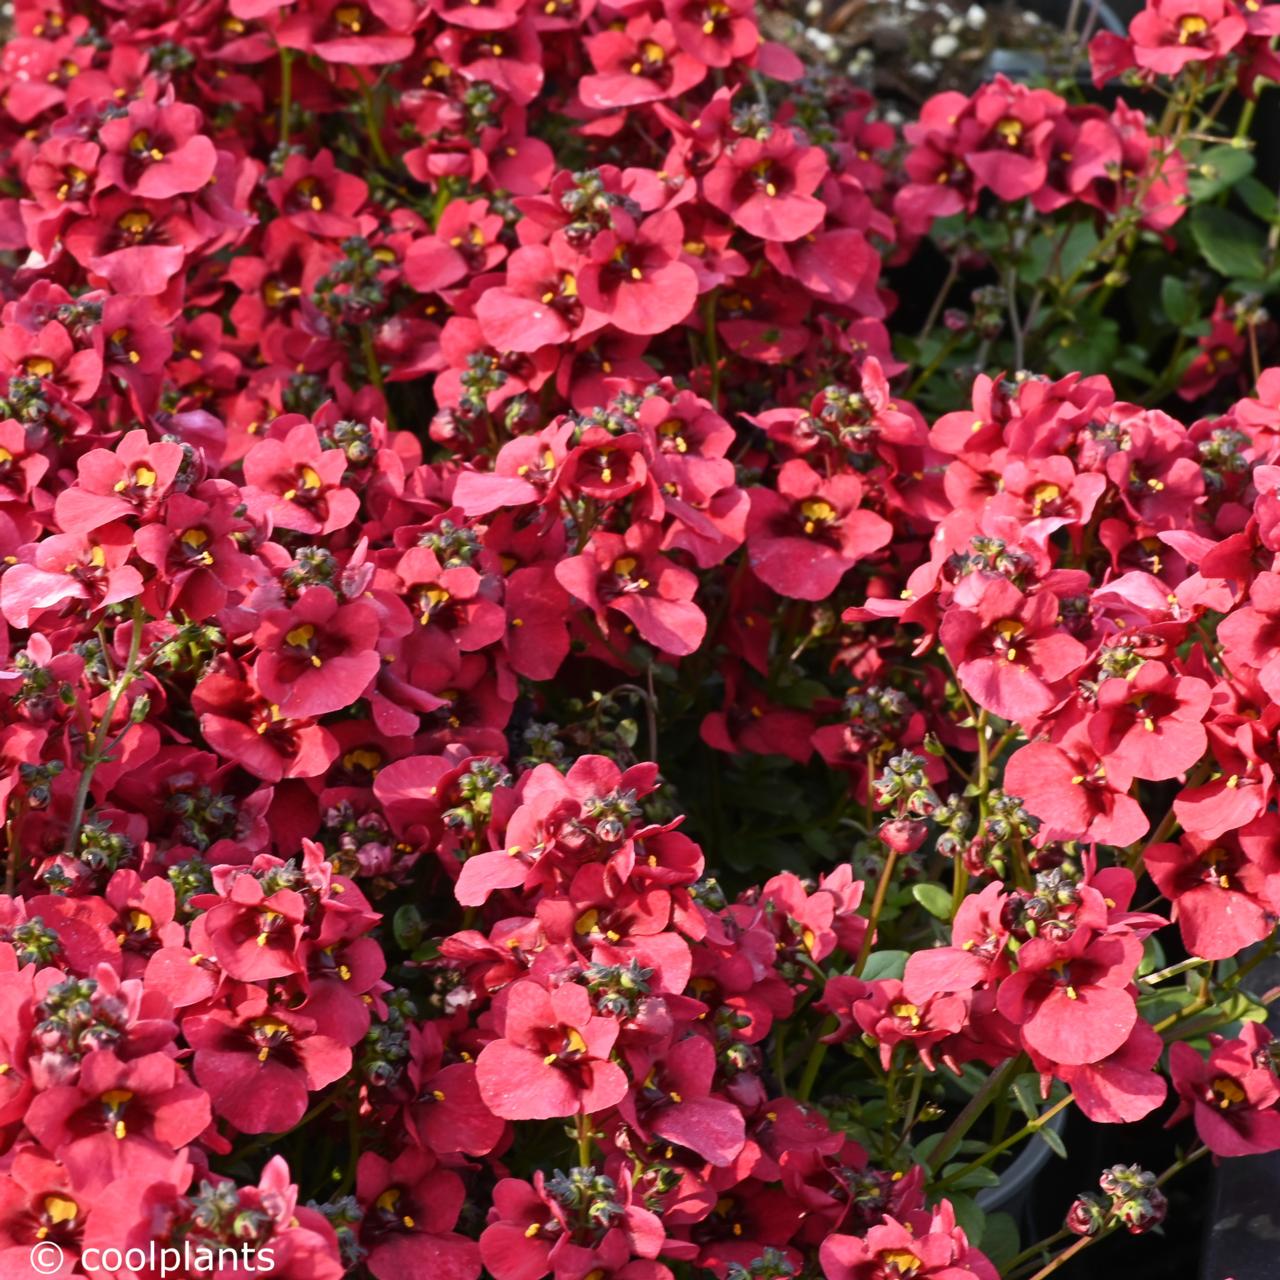 Diascia 'Divara Deep Red' plant